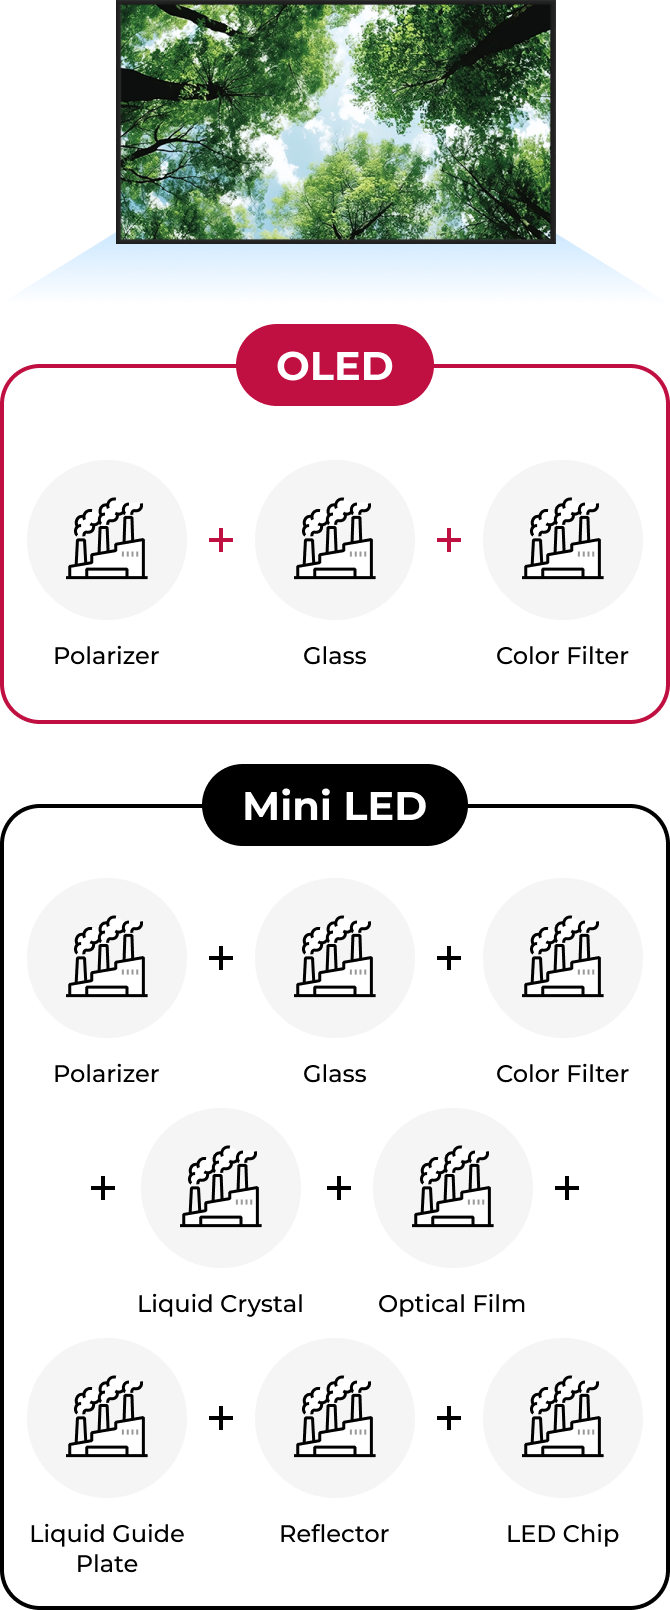 LED, Mini LED, QLED, OLEDWhat are these??